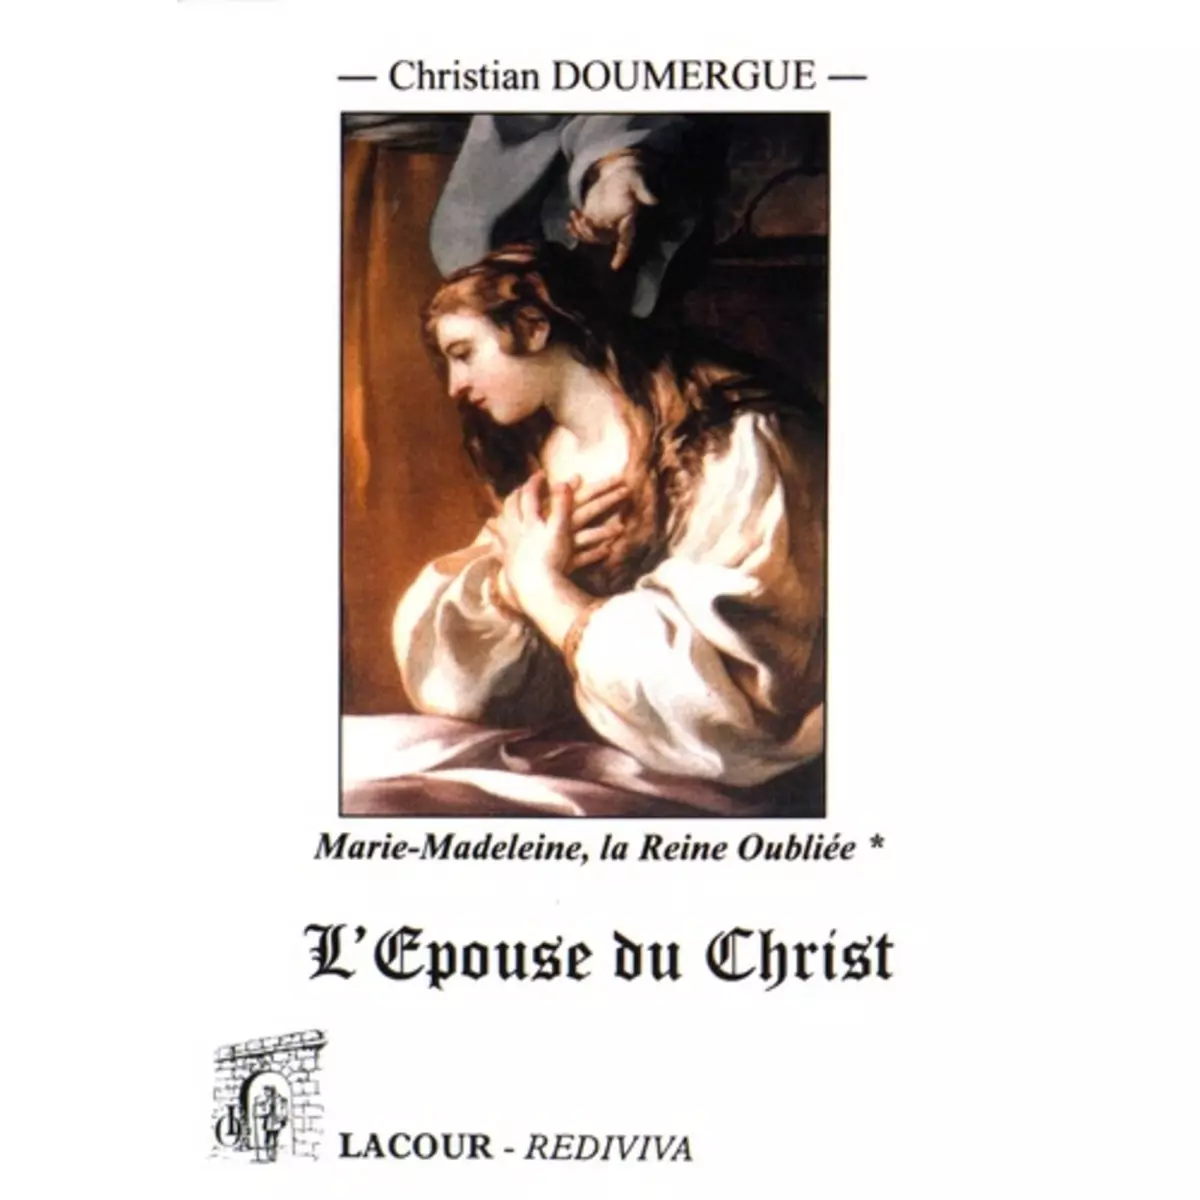  MARIE-MADELEINE : LA REINE OUBLIEE. TOME PREMIER (LIVRES I A IV) : L'EPOUSE DU CHRIST, Doumergue Christian